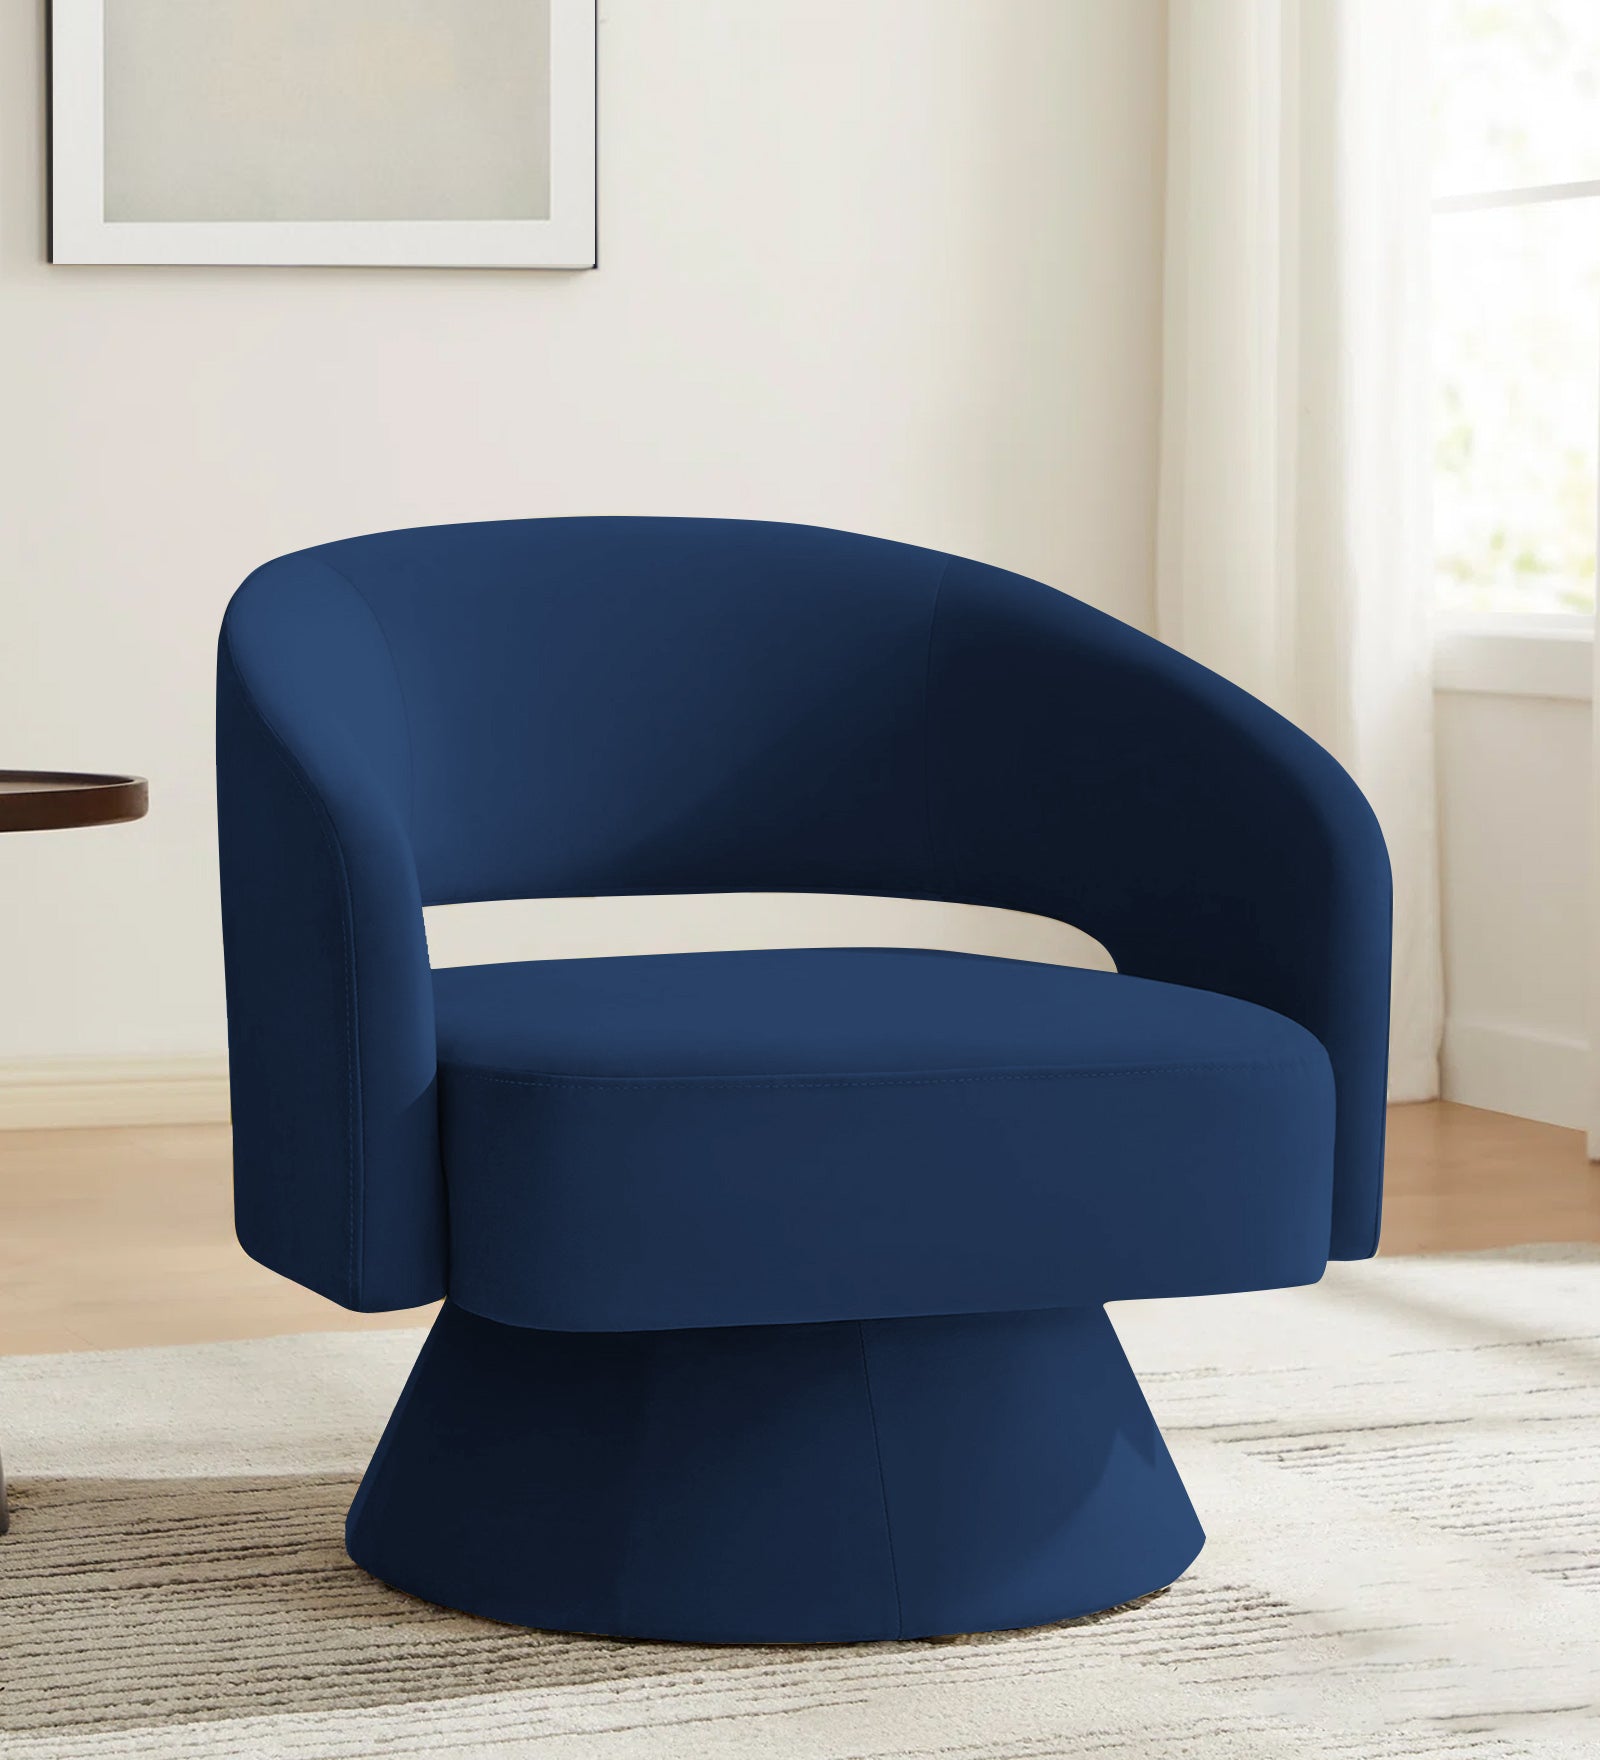 Pendra Velvet Swivel Chair in Imperial Blue Colour